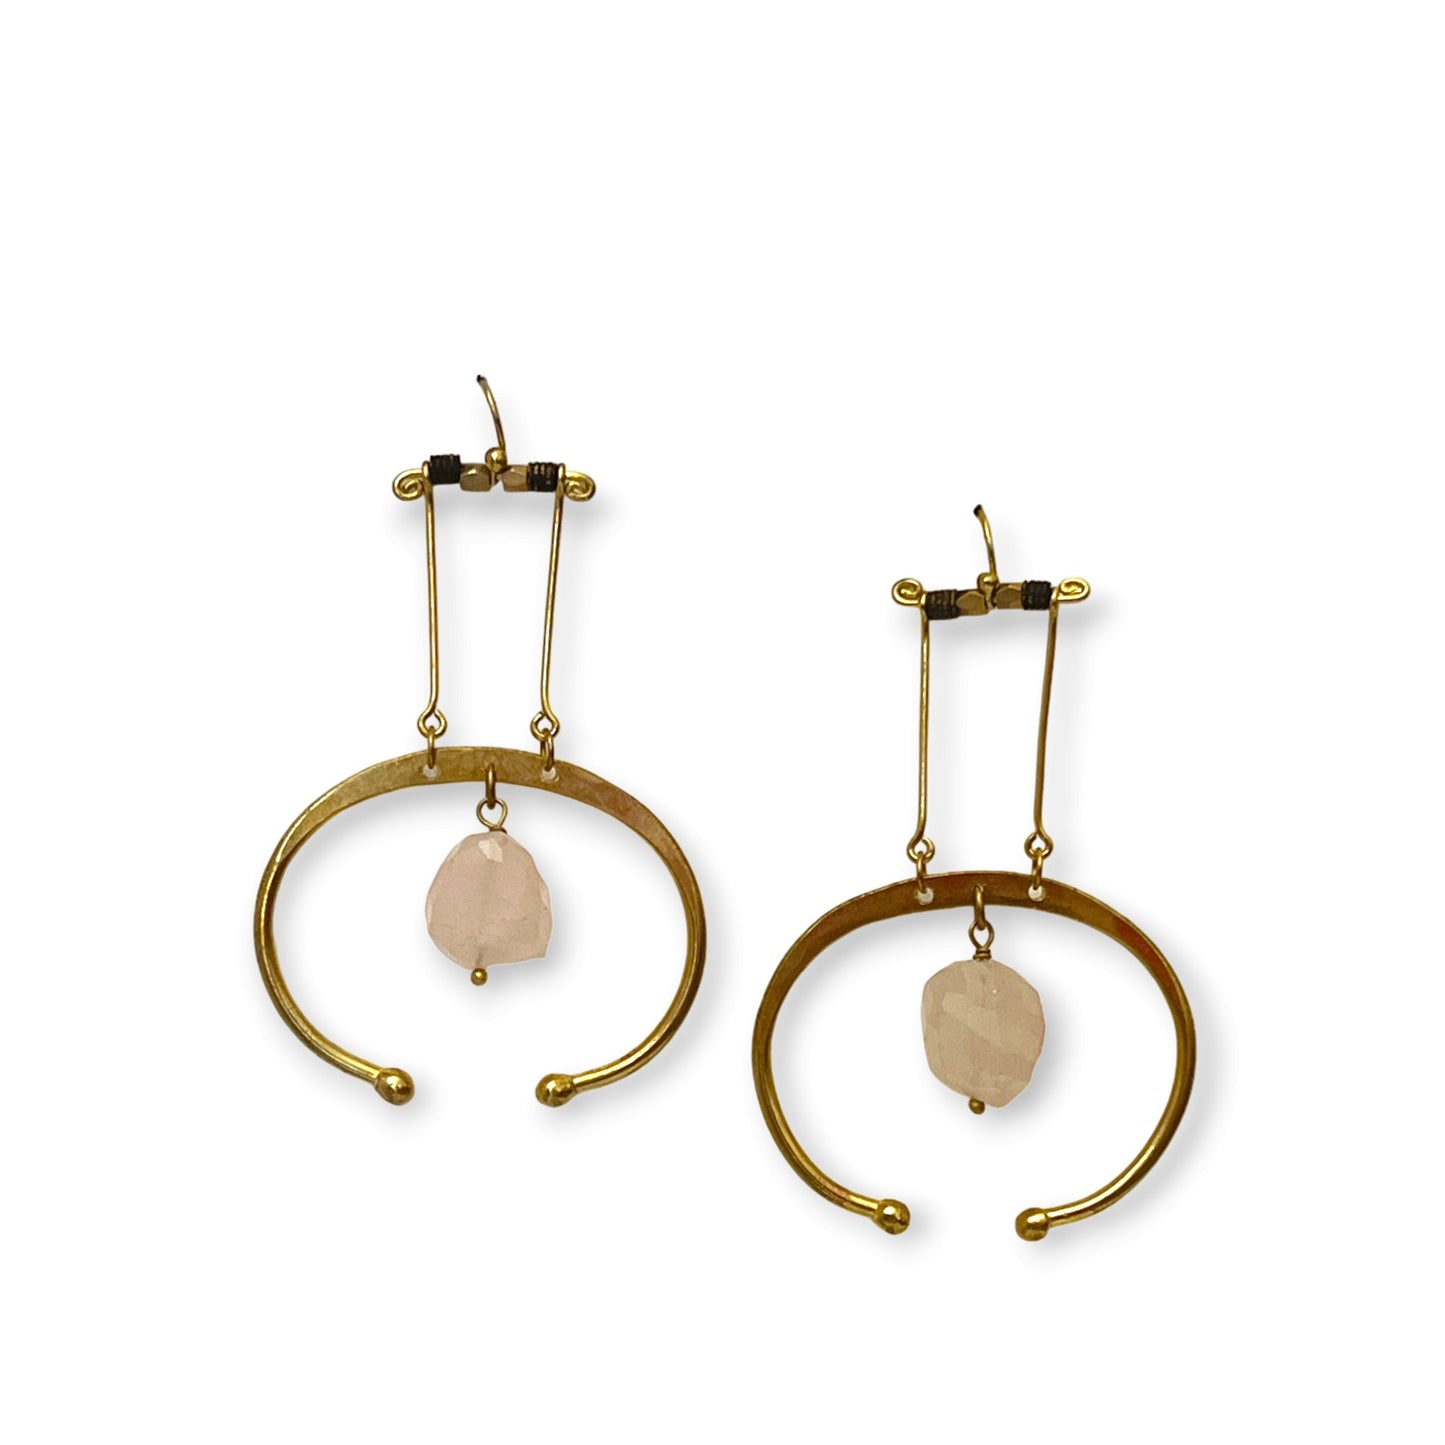 Colorful suspended gemstone statement earrings - Sundara Joon